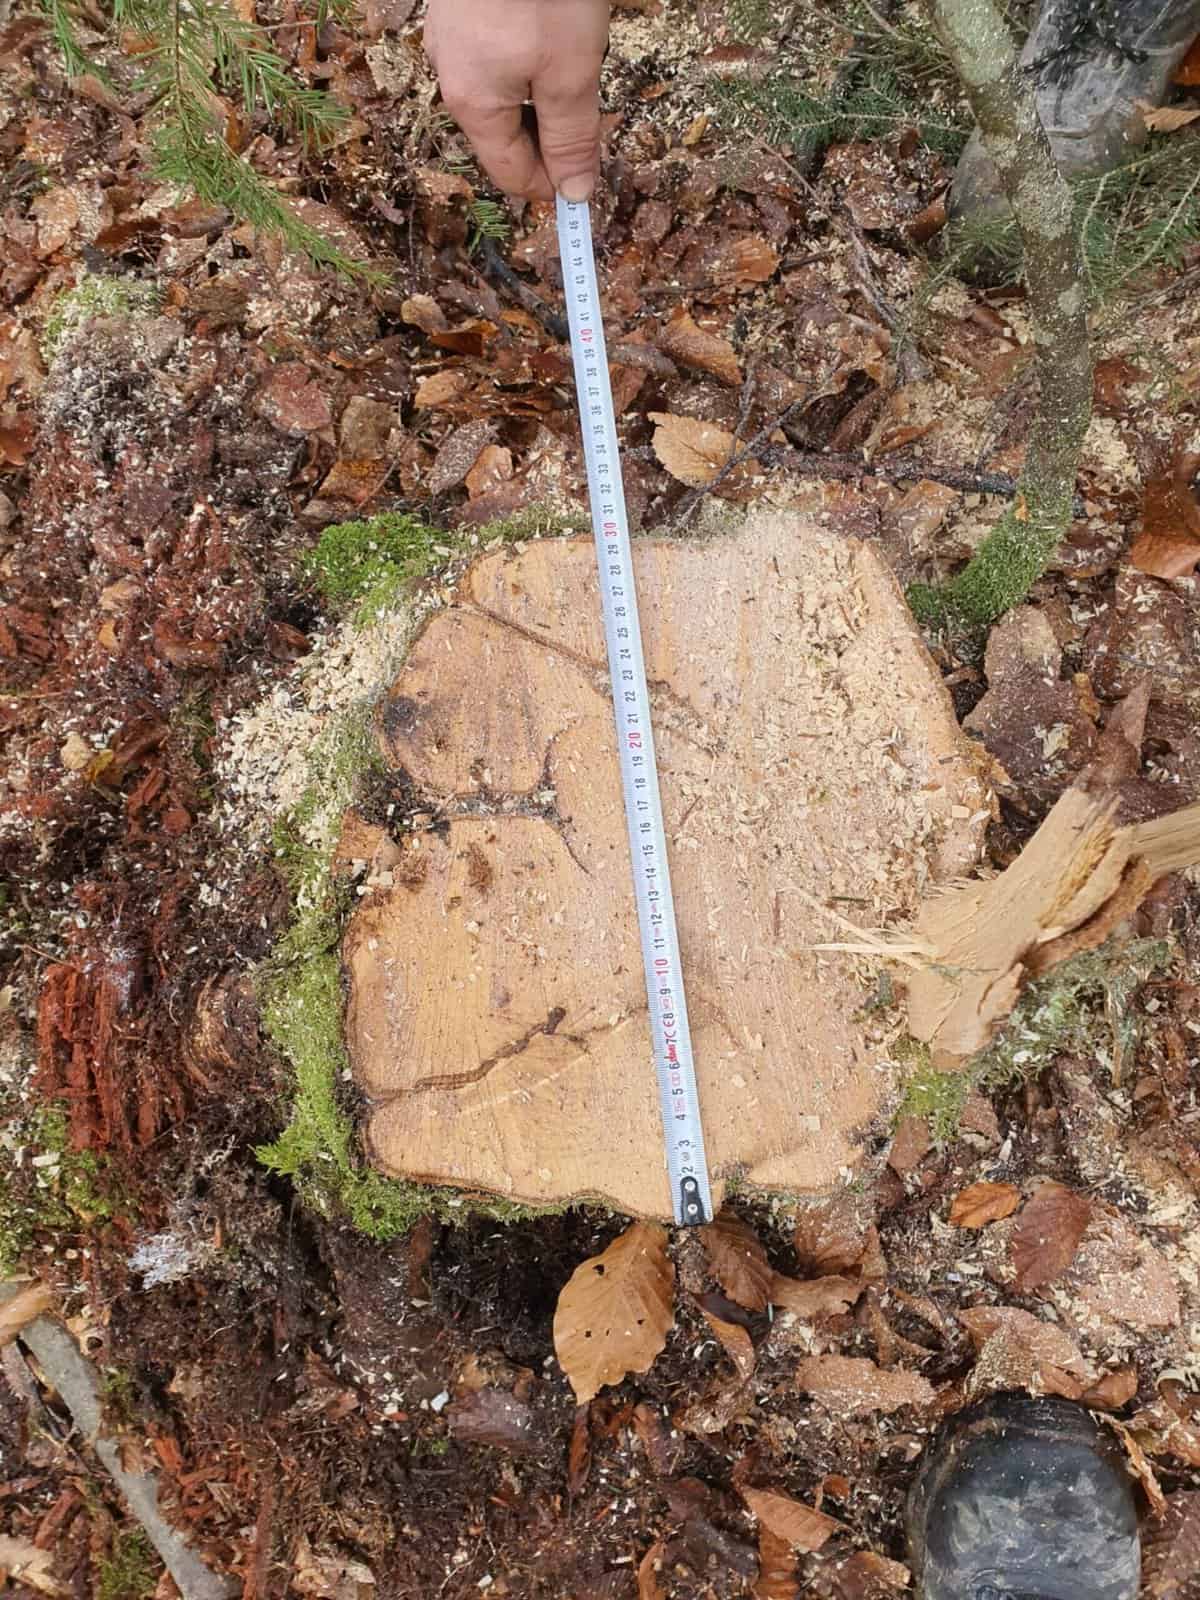 lemne tăiate ilegal în pădurea din scoreiu - bărbat amendat cu 5.000 de lei